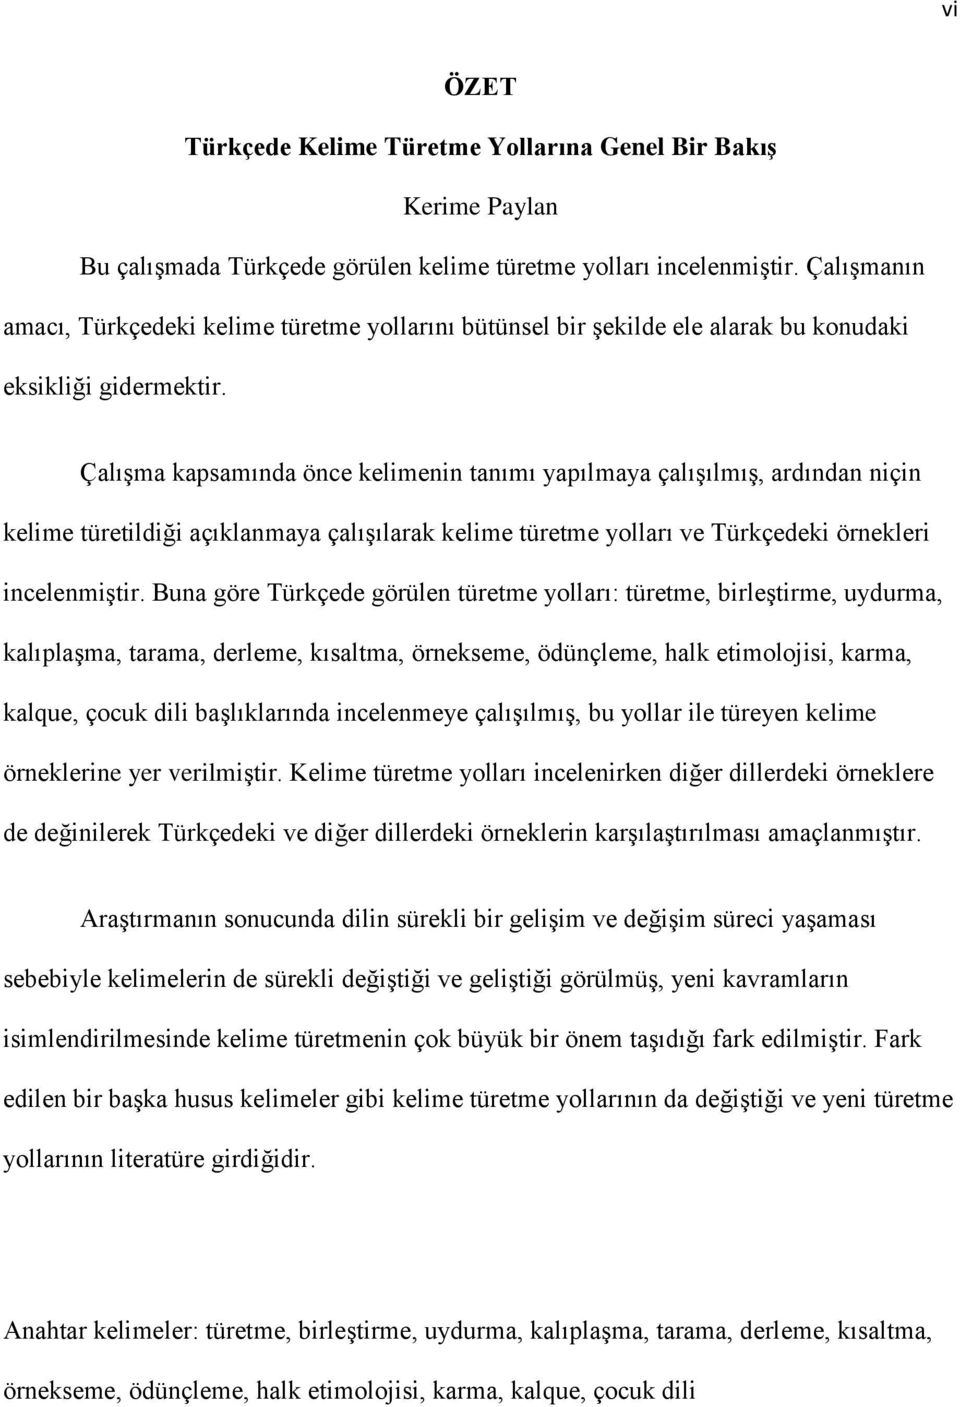 turkcede kelime turetme yollarina genel bir bakis pdf ucretsiz indirin